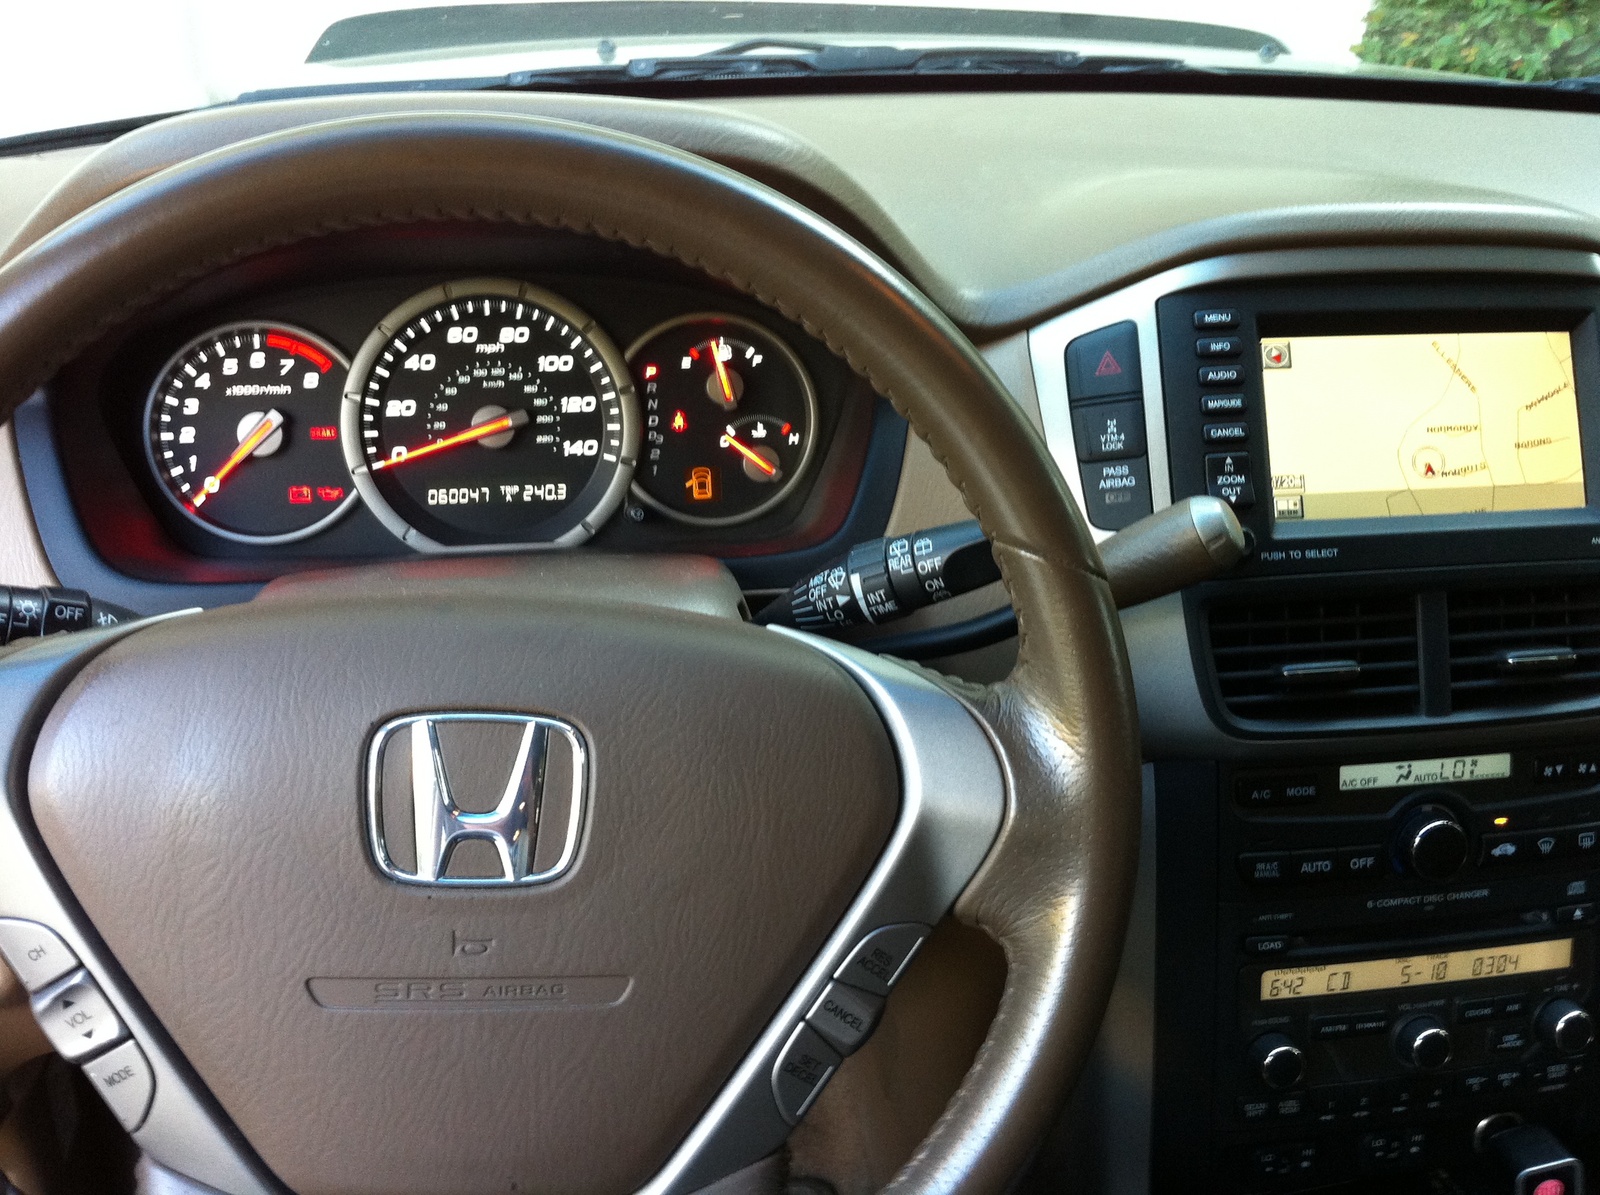 2006 Honda pilot exl interior #3